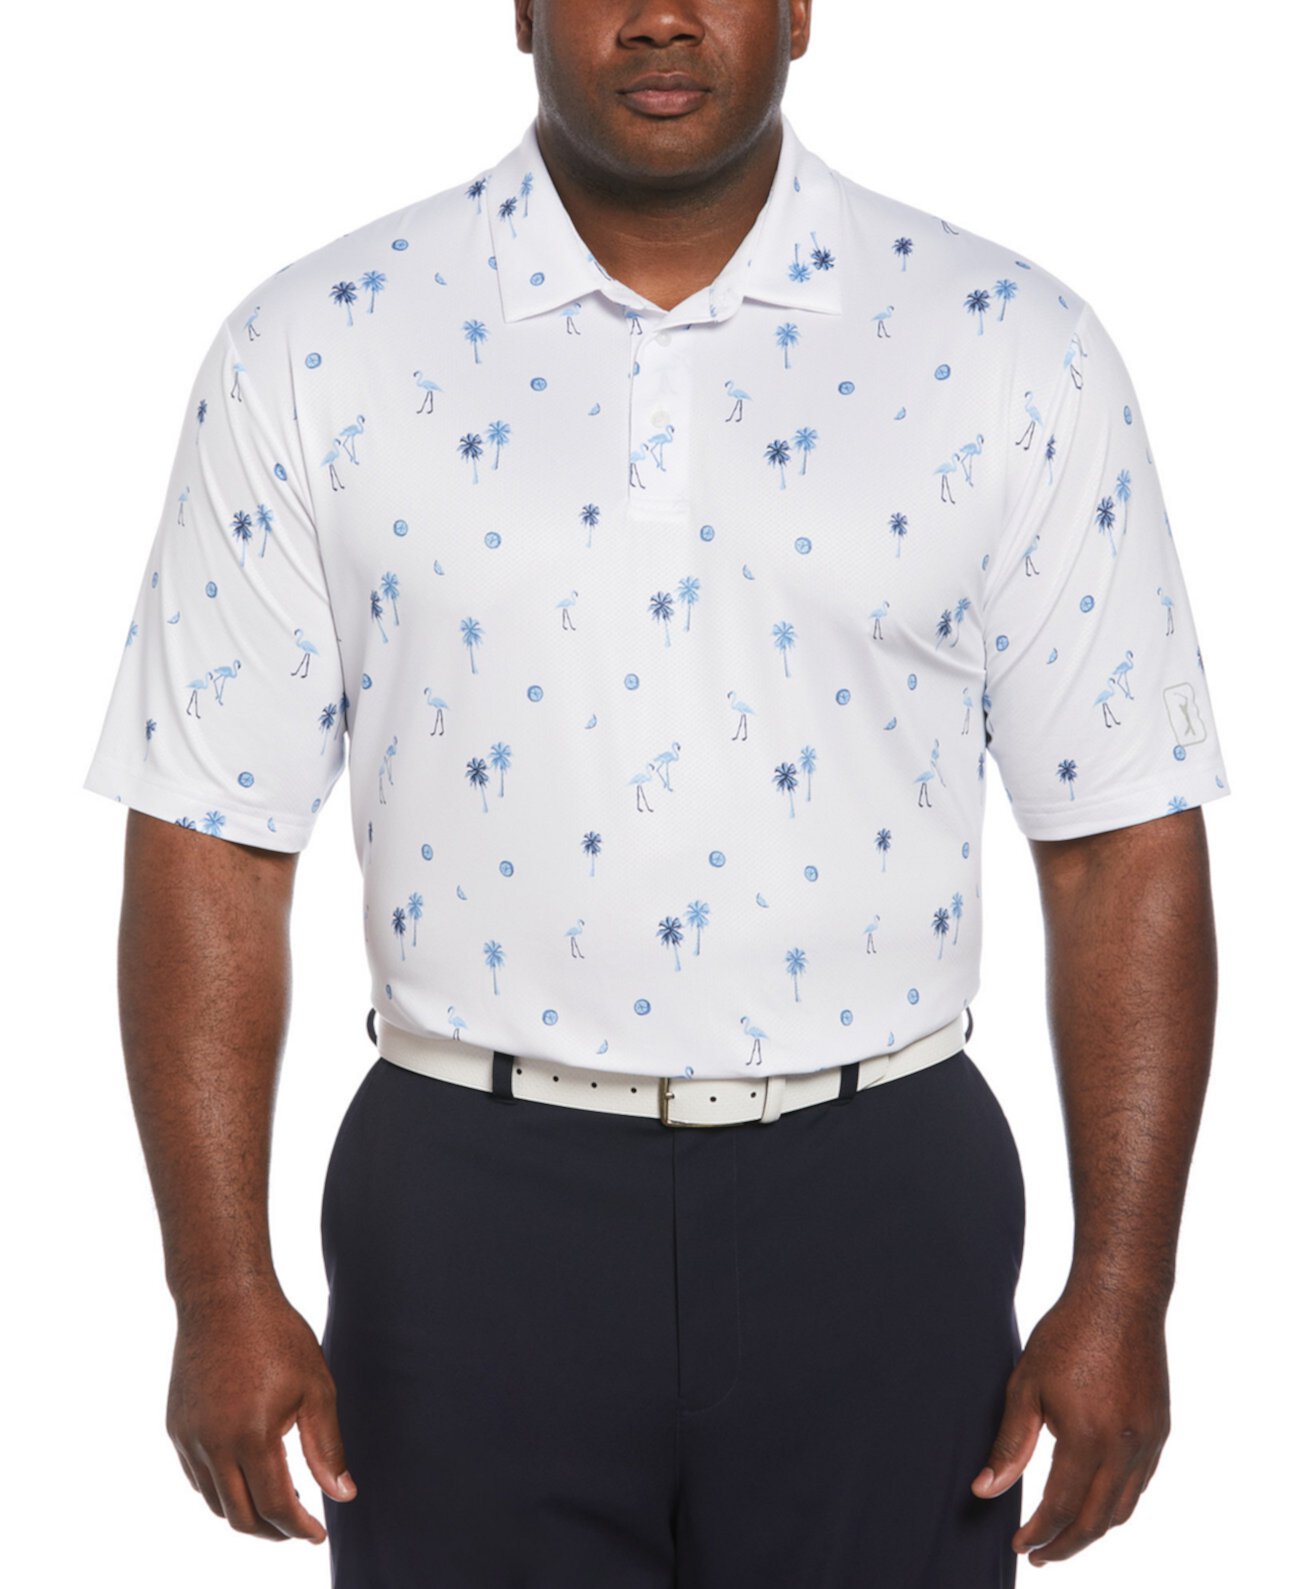 Мужская футболка-поло PGA TOUR с короткими рукавами и принтом фламинго и пальмы PGA TOUR